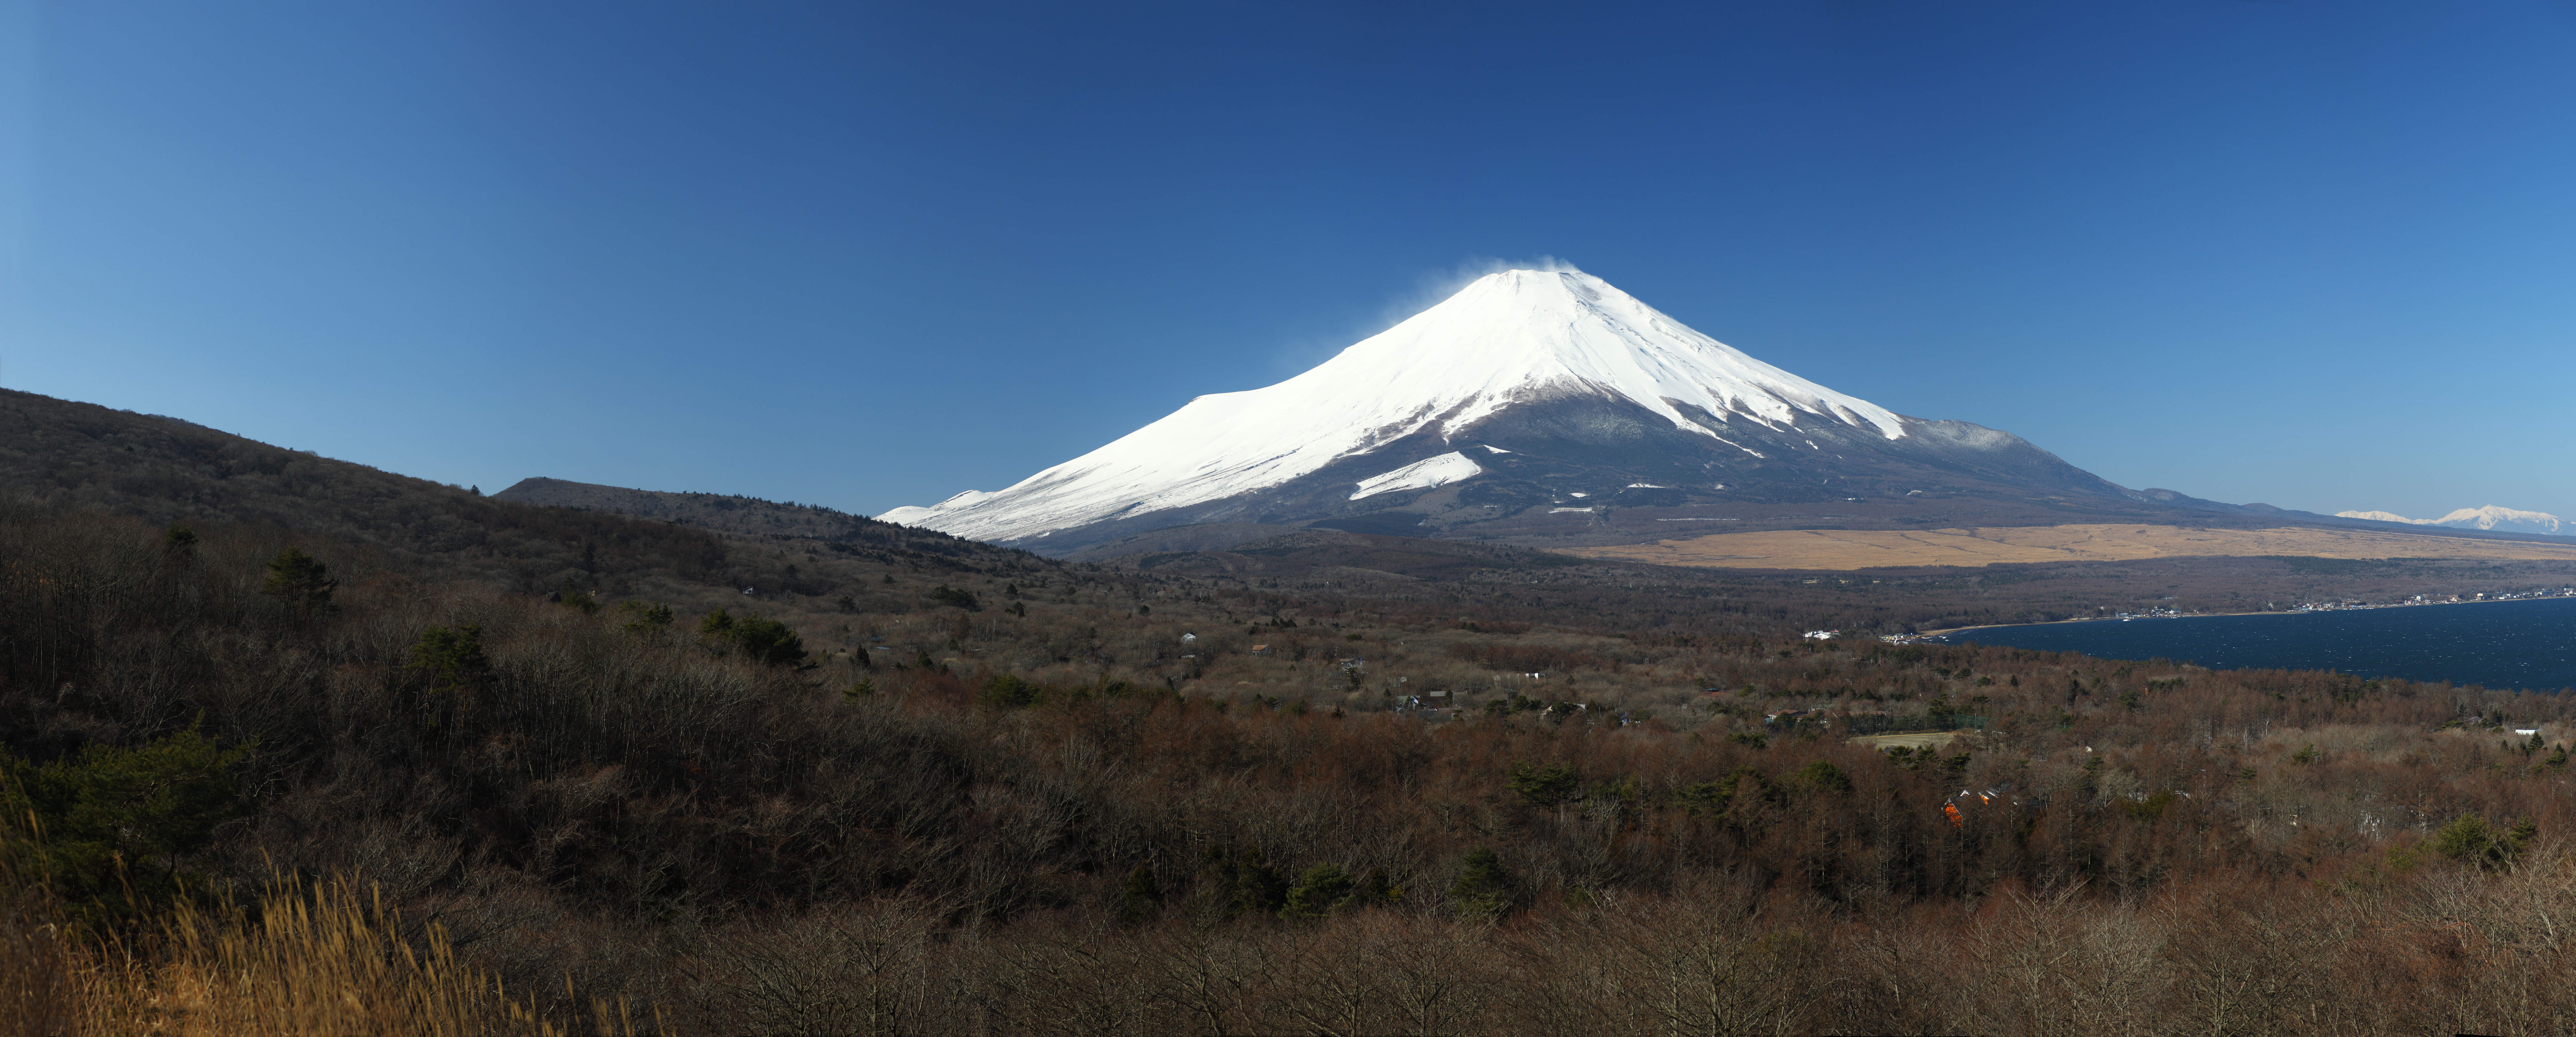 photo, la matire, libre, amnage, dcrivez, photo de la rserve,Mt. Fuji, Mt. Fuji, Yamanakako, , 